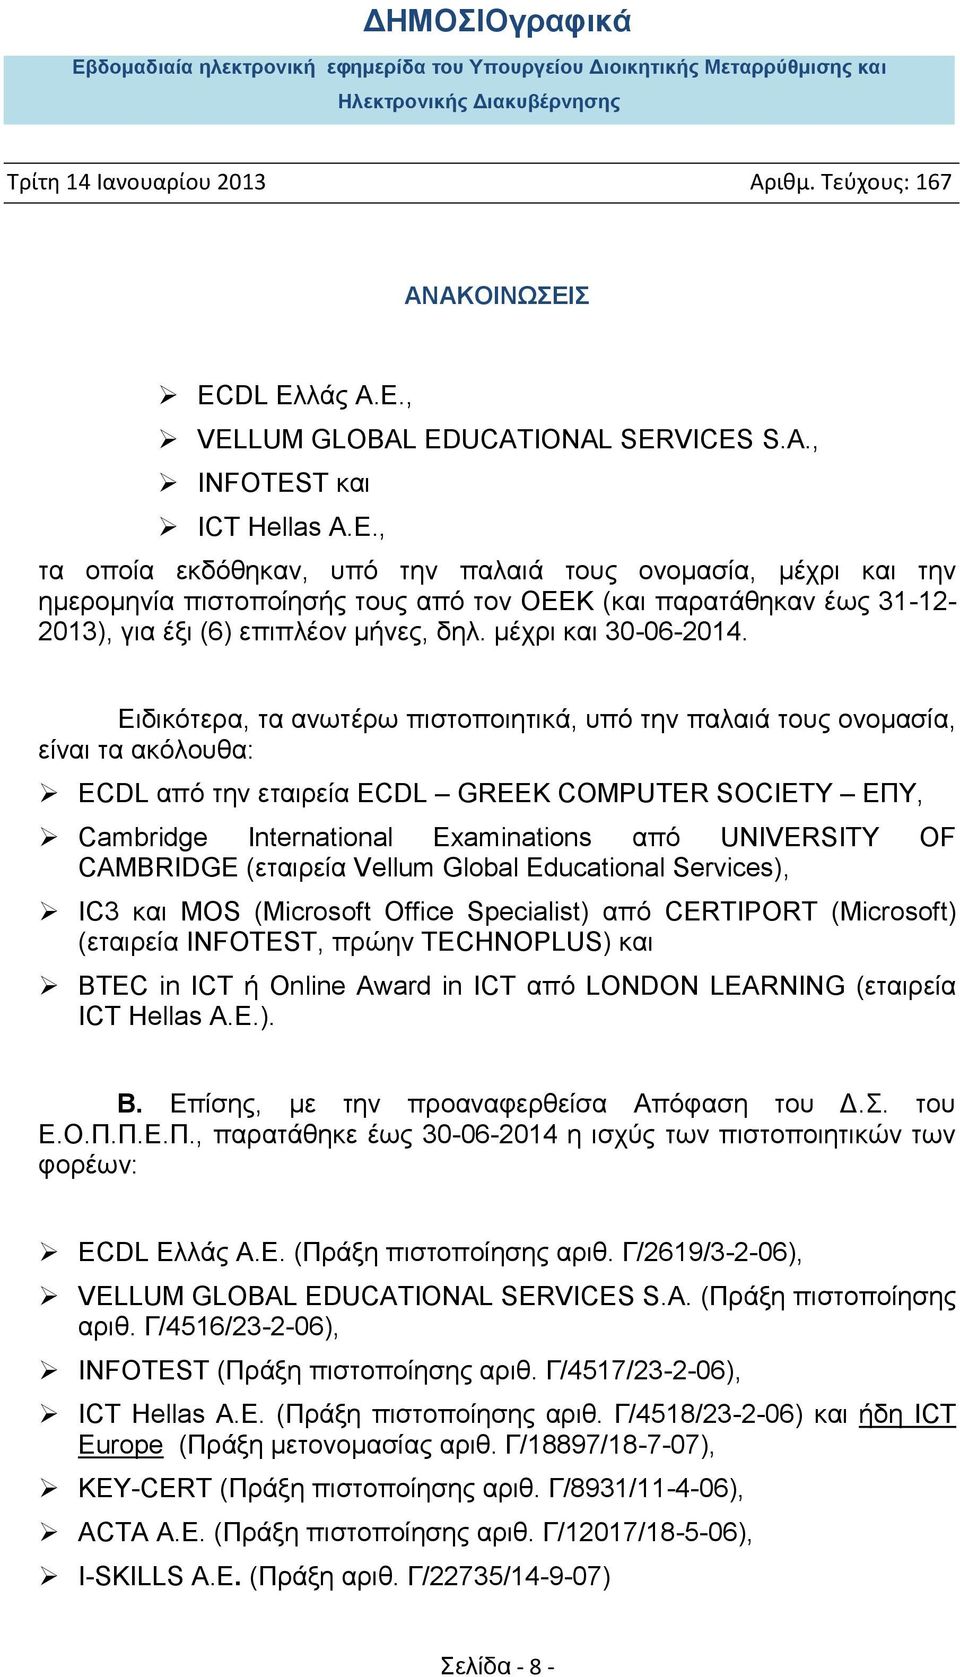 Ειδικότερα, τα ανωτέρω πιστοποιητικά, υπό την παλαιά τους ονομασία, είναι τα ακόλουθα: ECDL από την εταιρεία ECDL GREEK COMPUTER SOCIETY EΠY, Cambridge International Examinations από UNIVERSITY OF